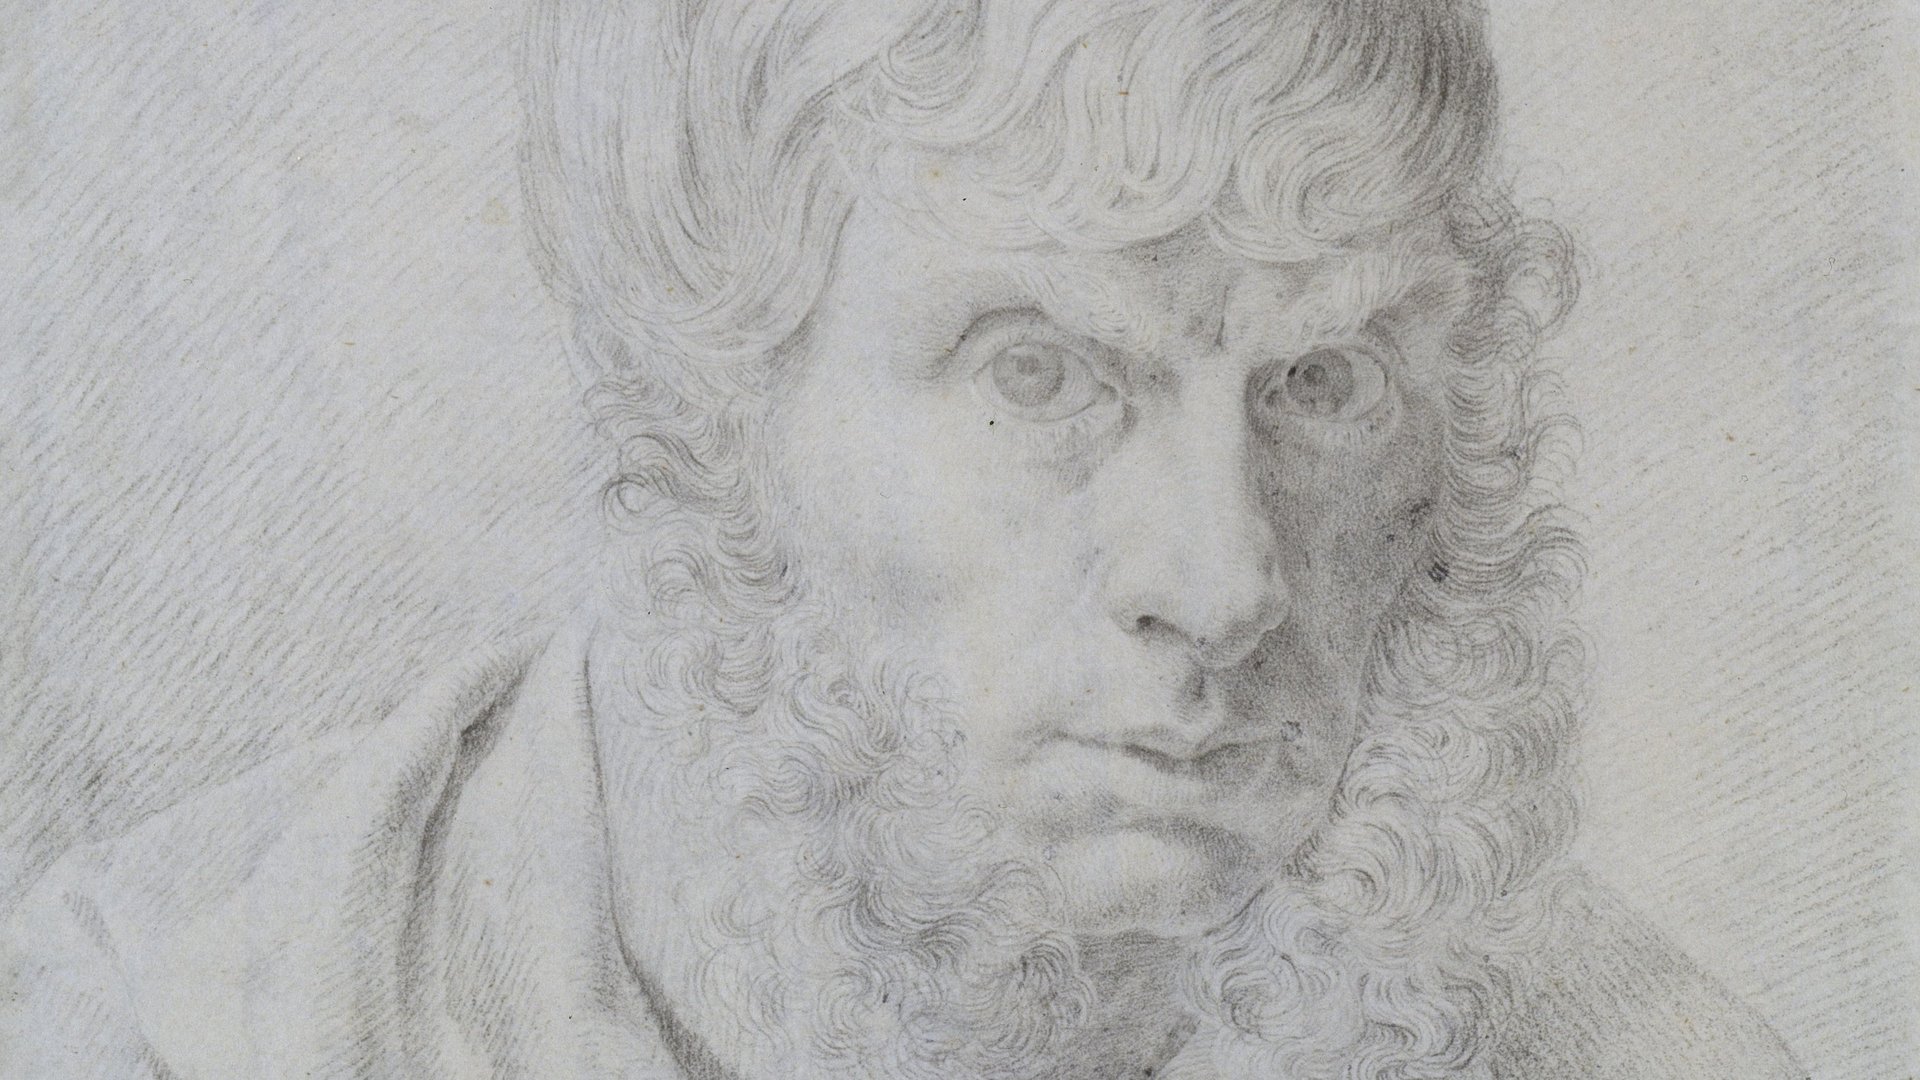 Schwarz-weiße Zeichnung eines Mannes mit Bart. Das Bild ist ein Selbstbildnis des Künstlers Caspar David Friedrich.